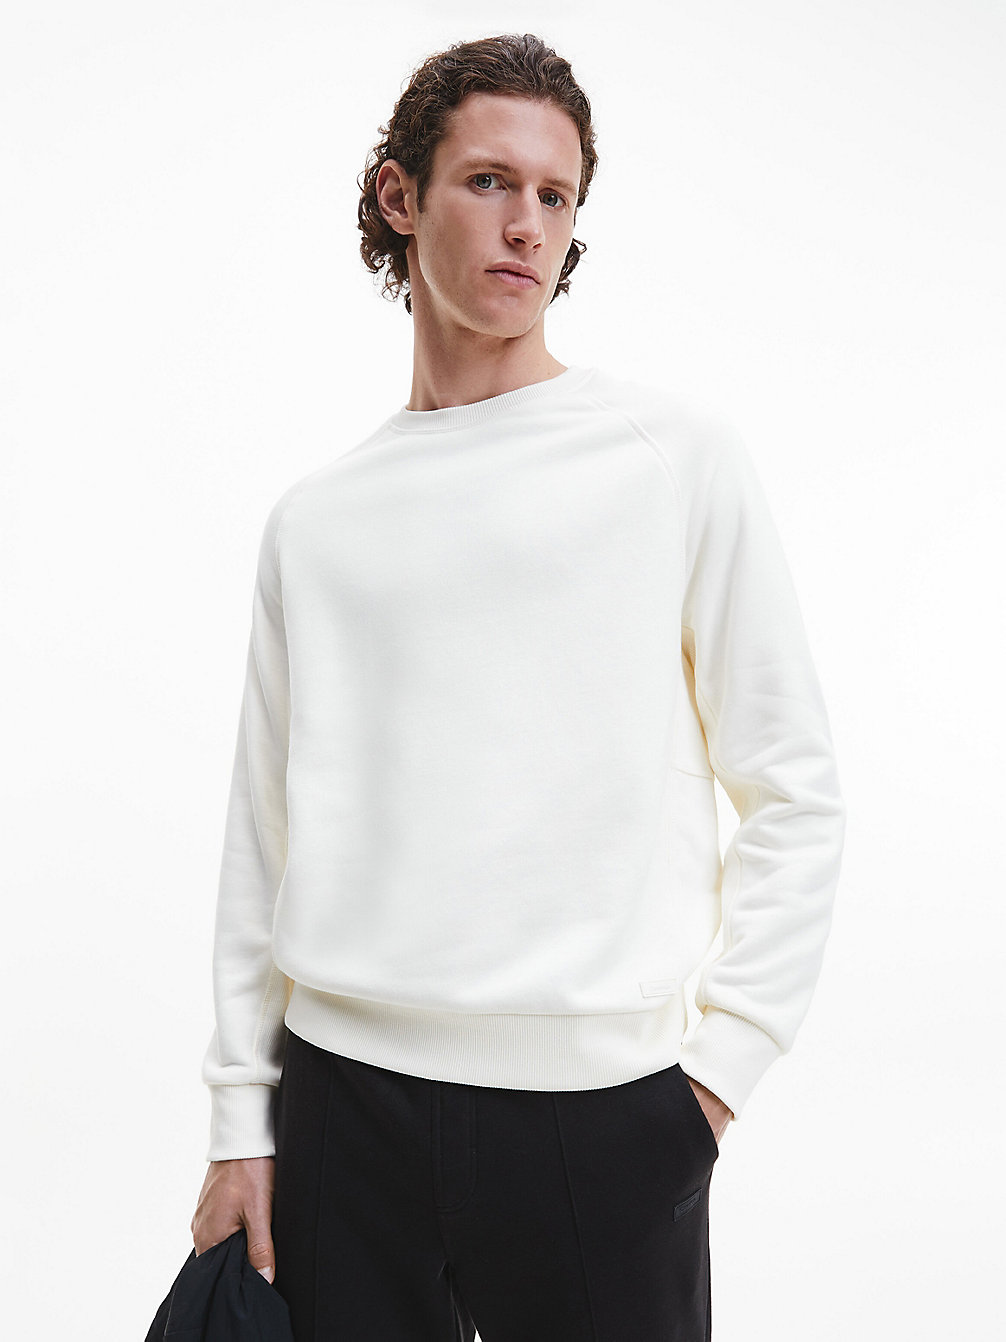 EGRET > Swobodna Polarowa Bluza > undefined Mężczyźni - Calvin Klein